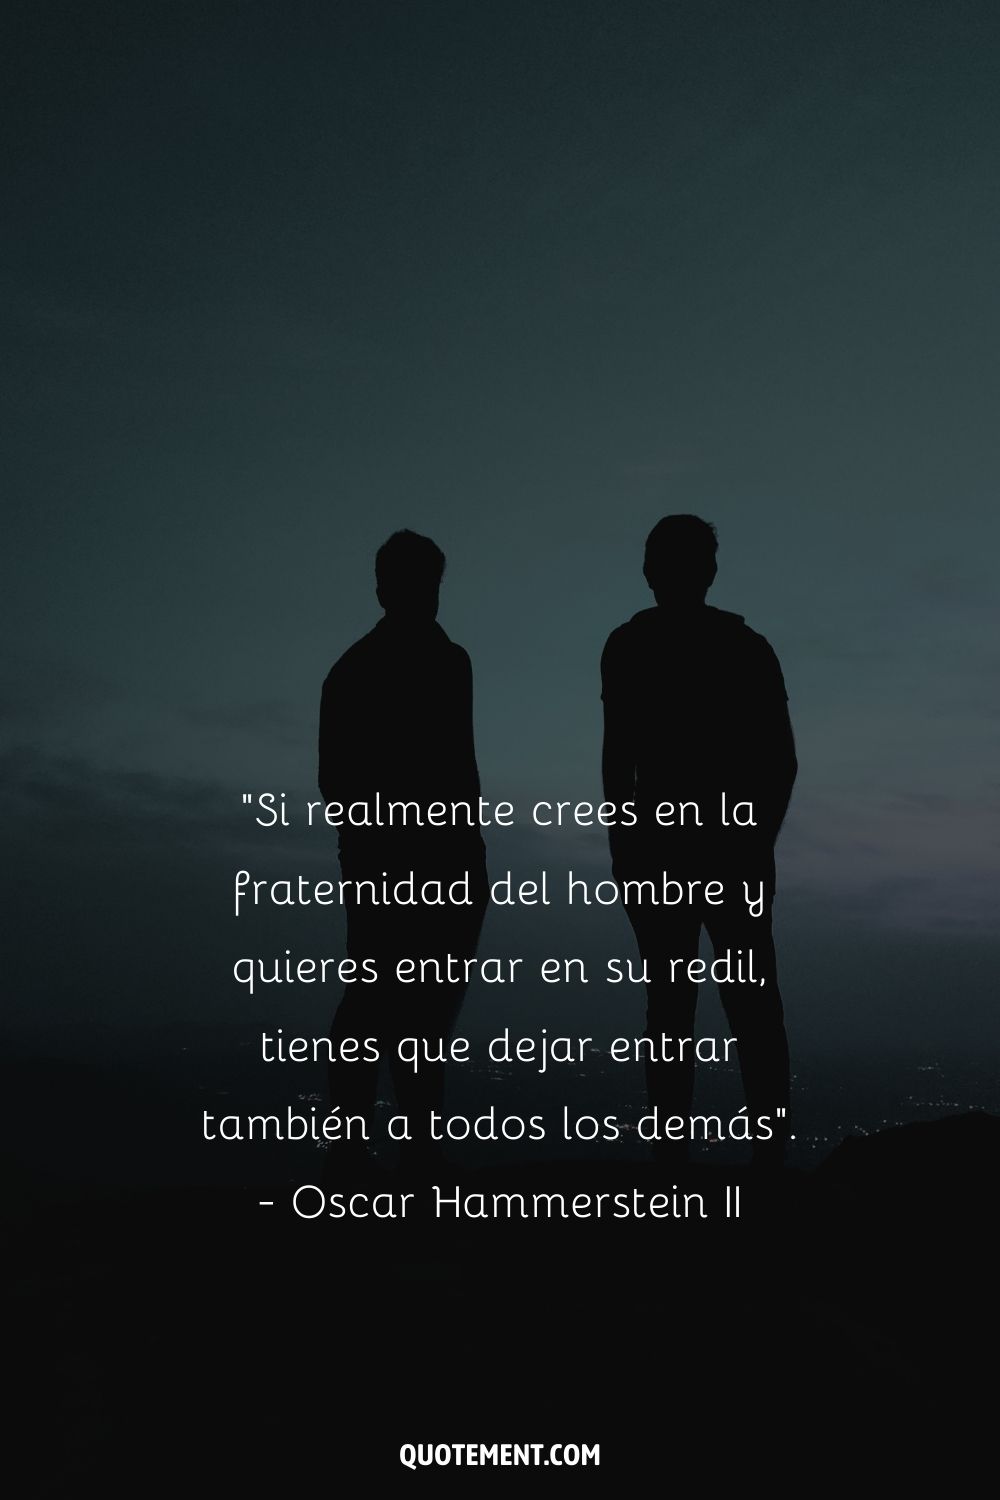 "Si realmente crees en la hermandad del hombre y quieres entrar en su redil, tienes que dejar entrar también a todos los demás". - Oscar Hammerstein II